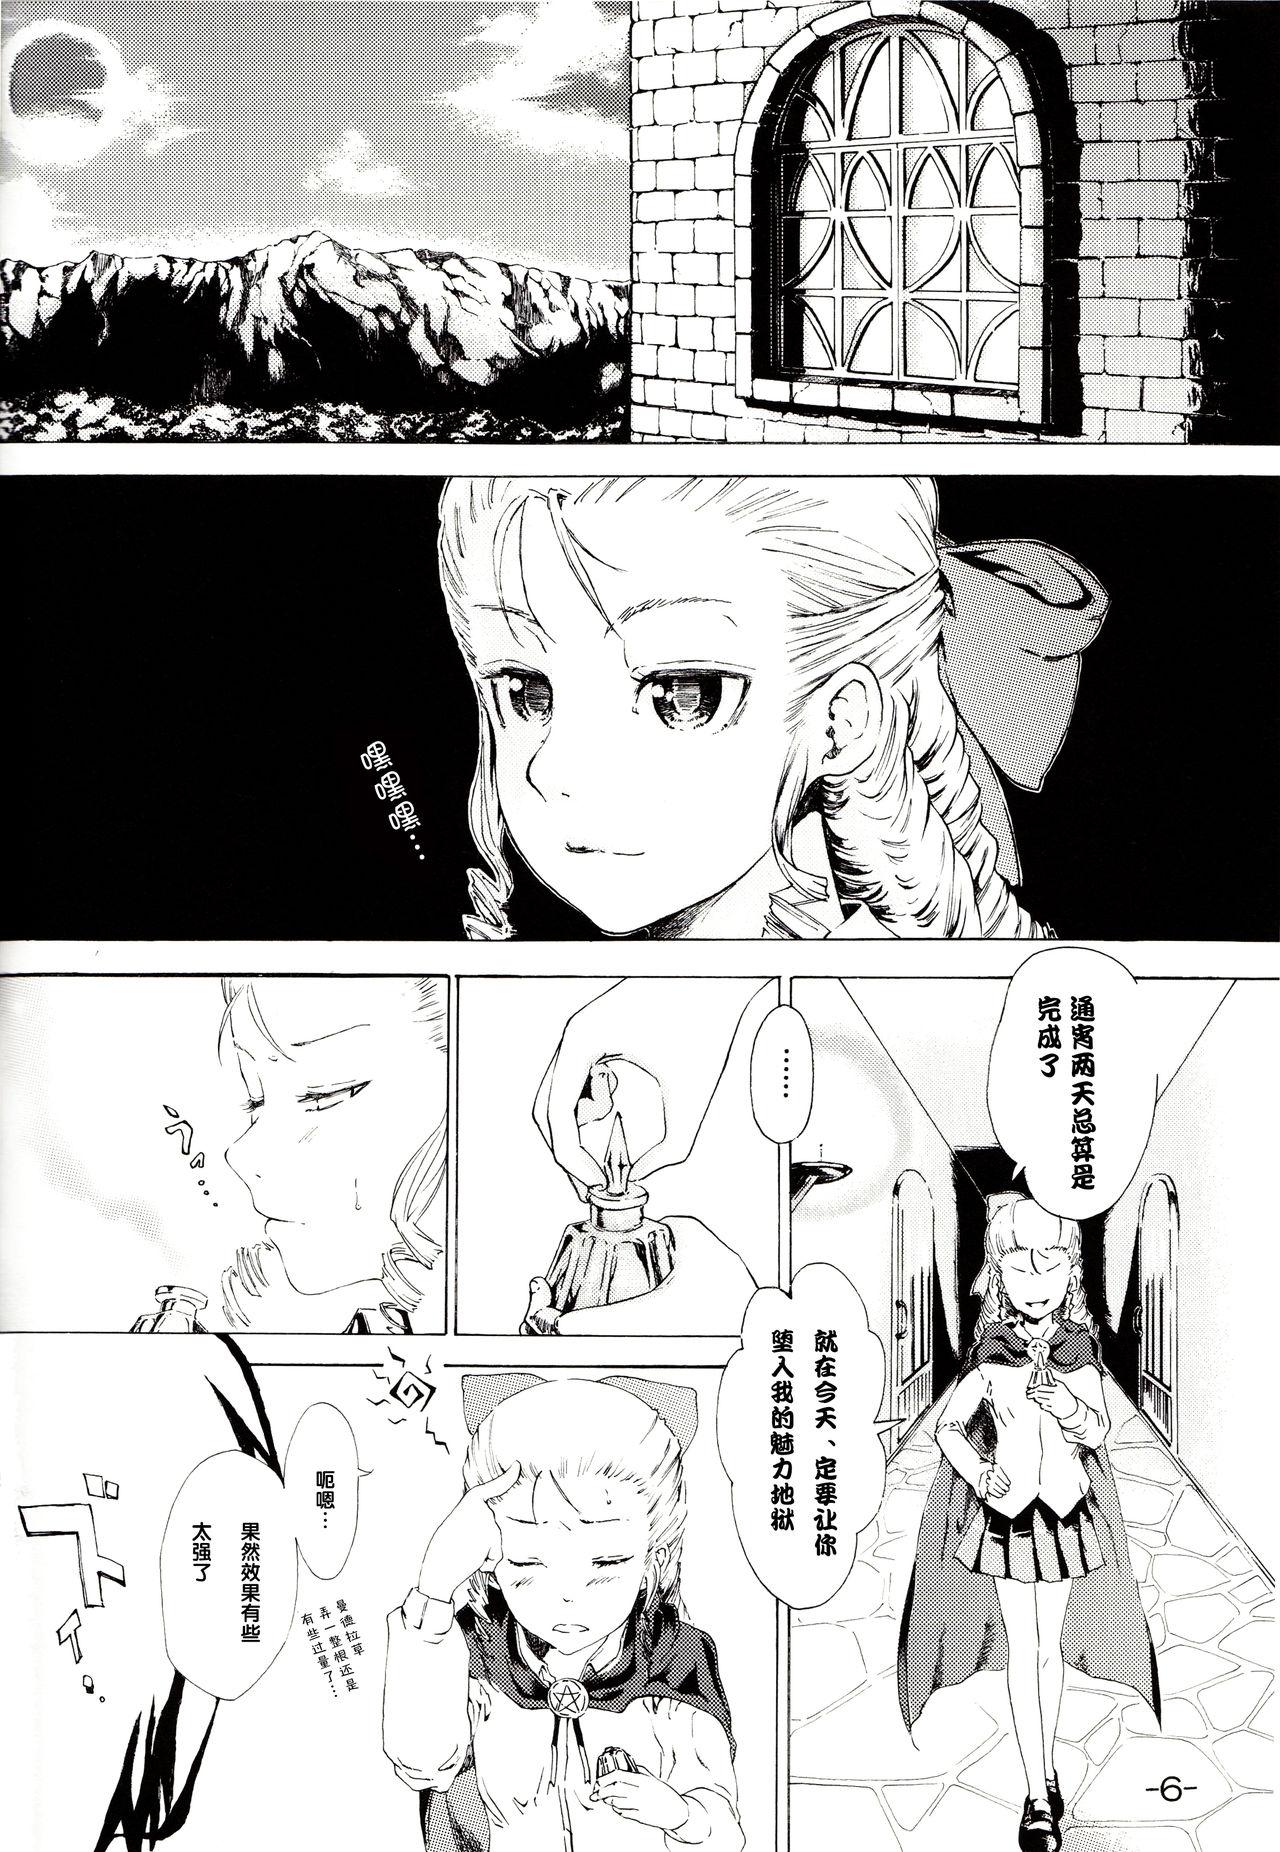 Petite Teenager Yukikaze no Tsukaima - Zero no tsukaima Anal Creampie - Page 5